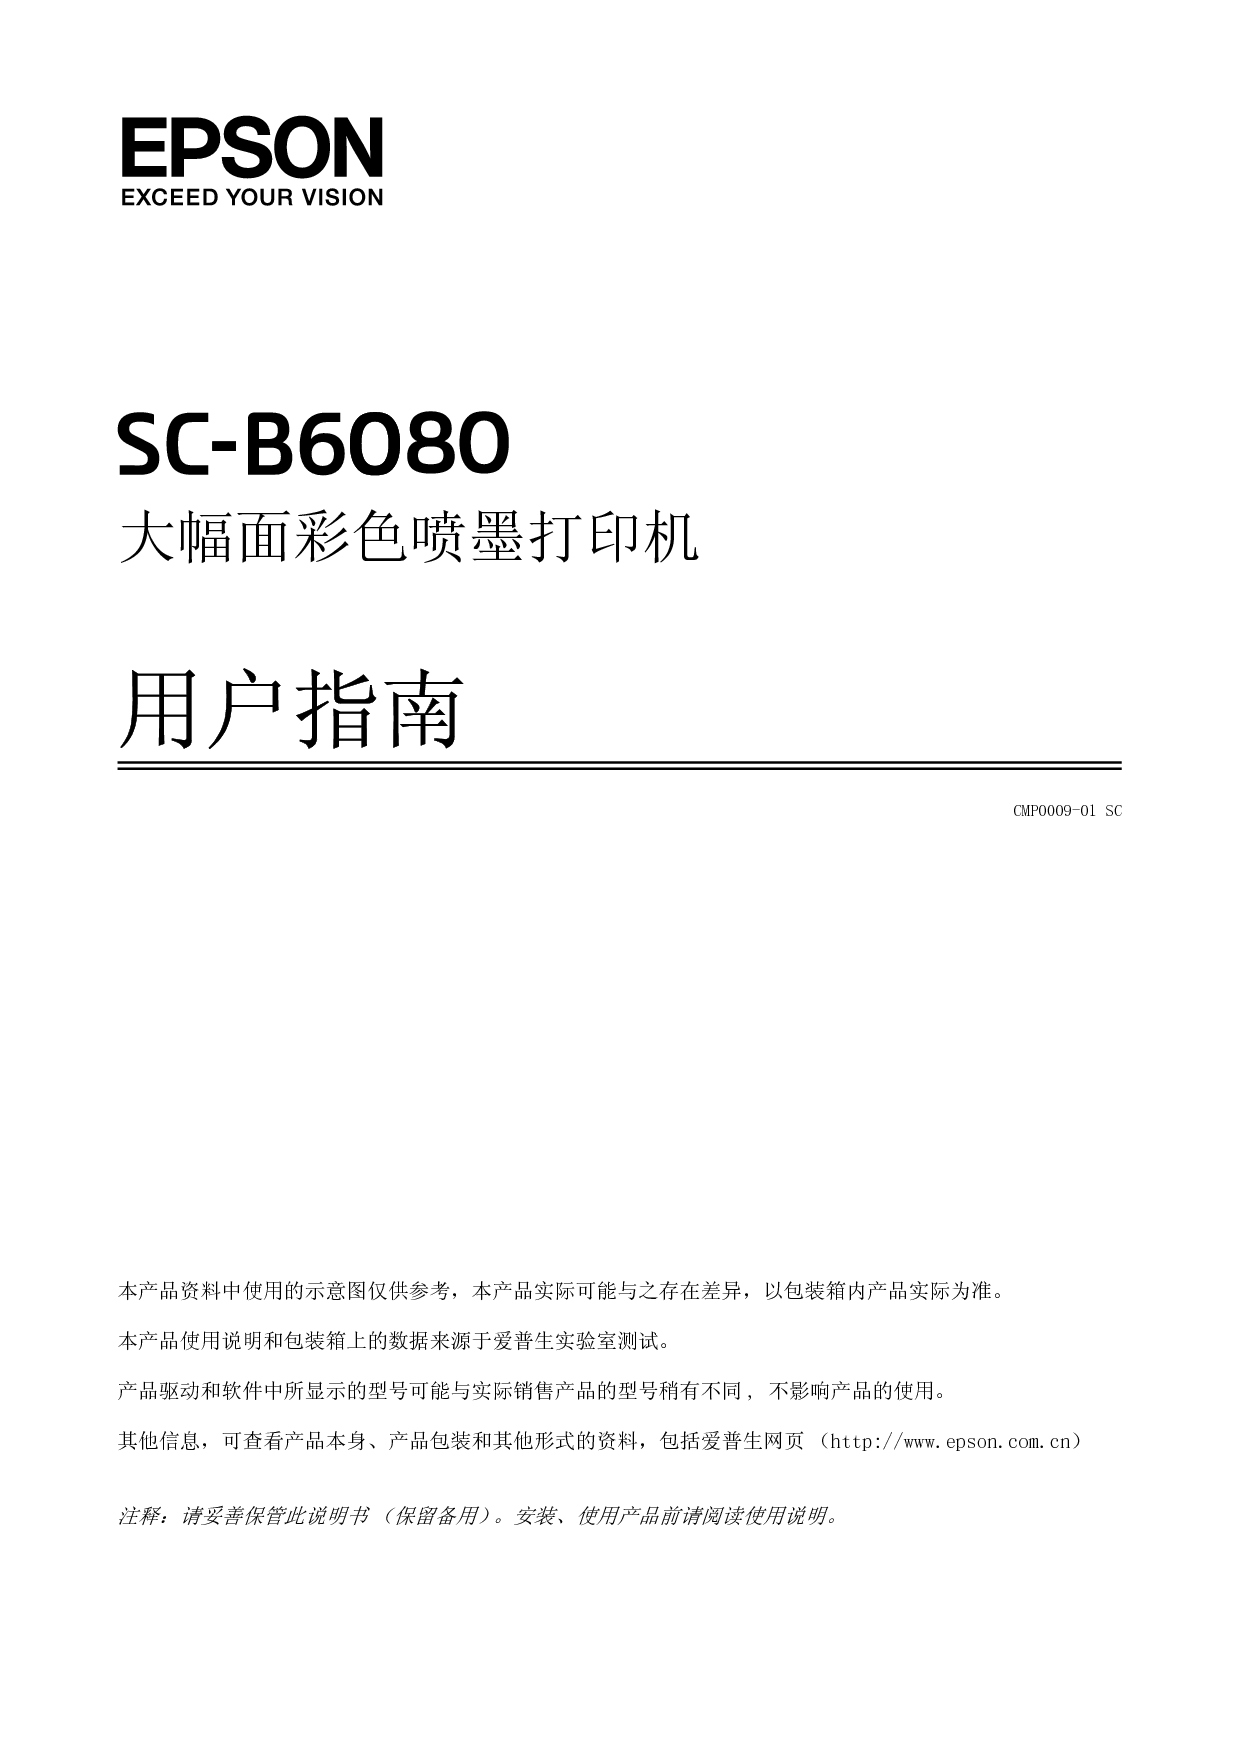 爱普生 Epson SC-B6080 用户指南 封面